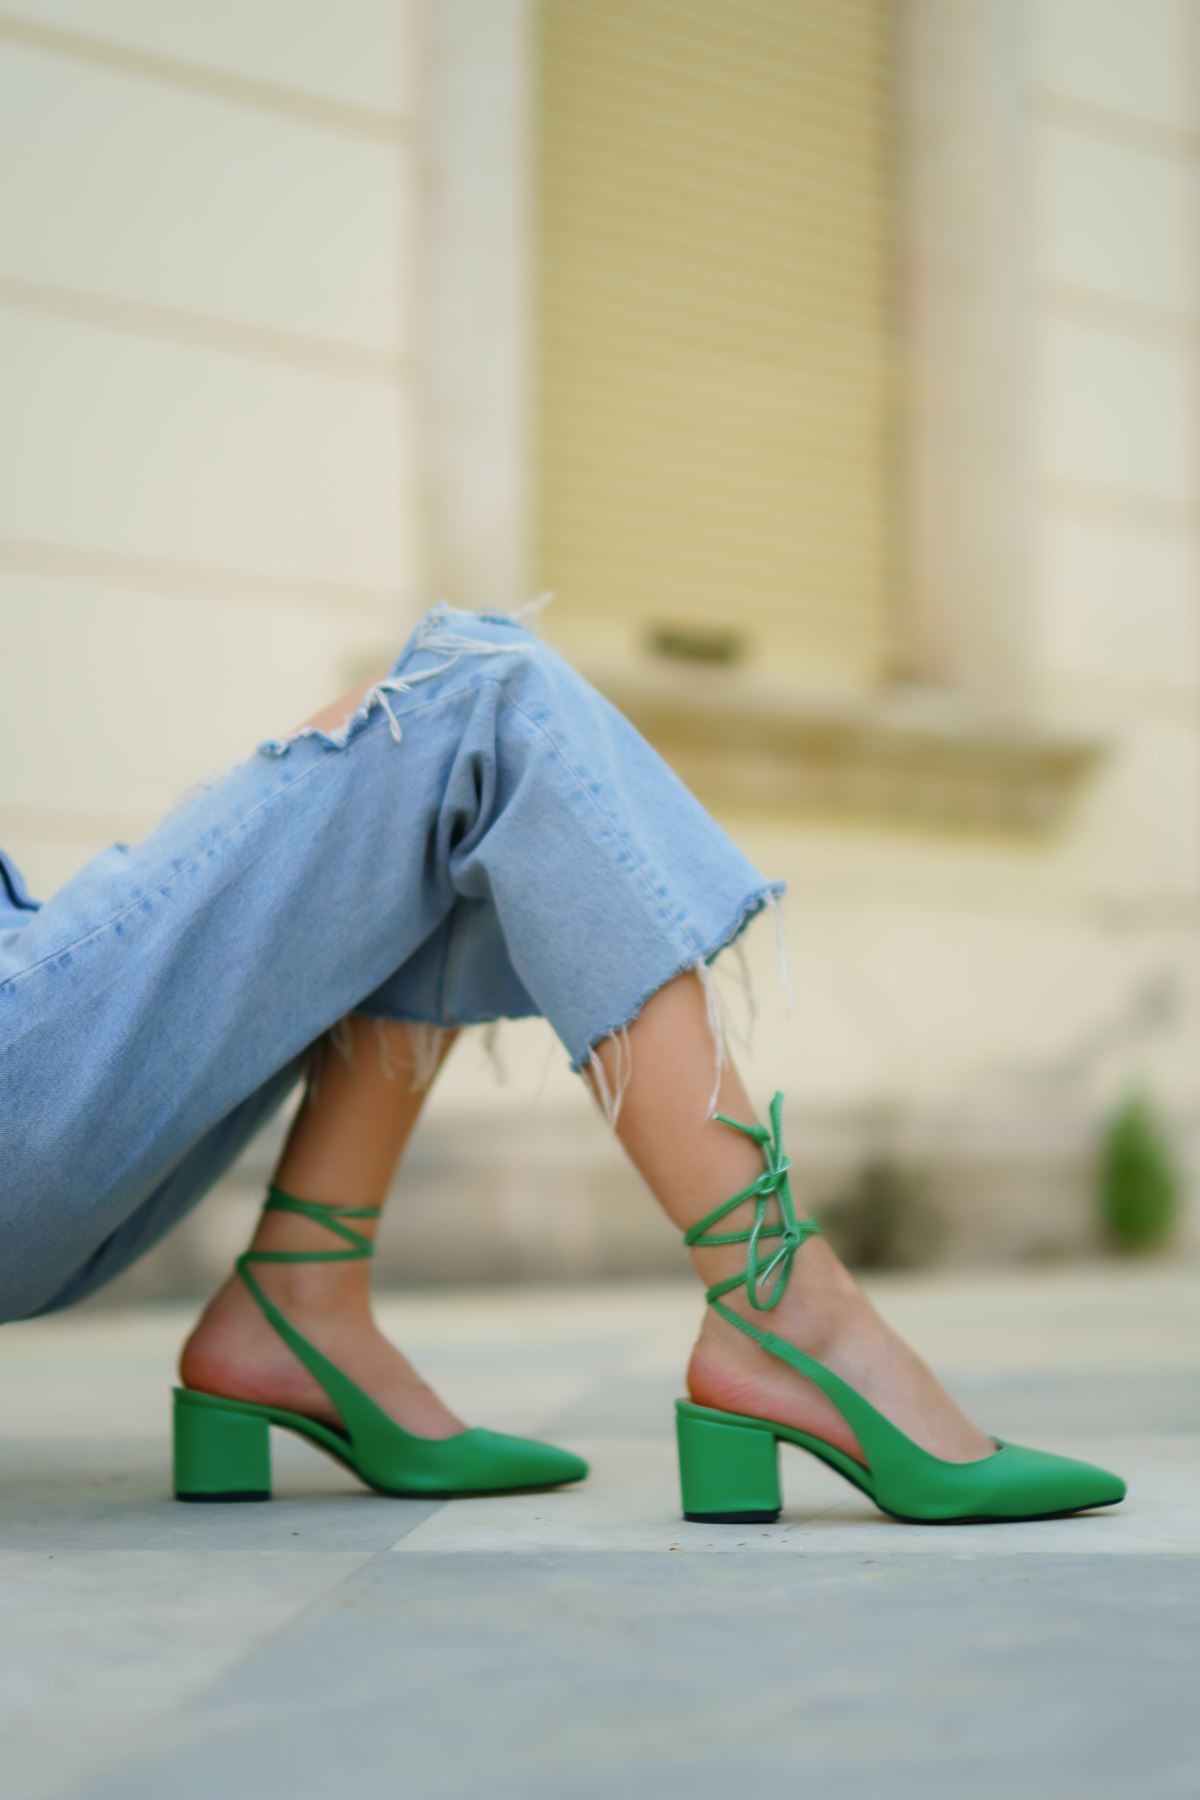 Kadın Esila Kısa Topuklu Ayakkabı - Yeşil Deri